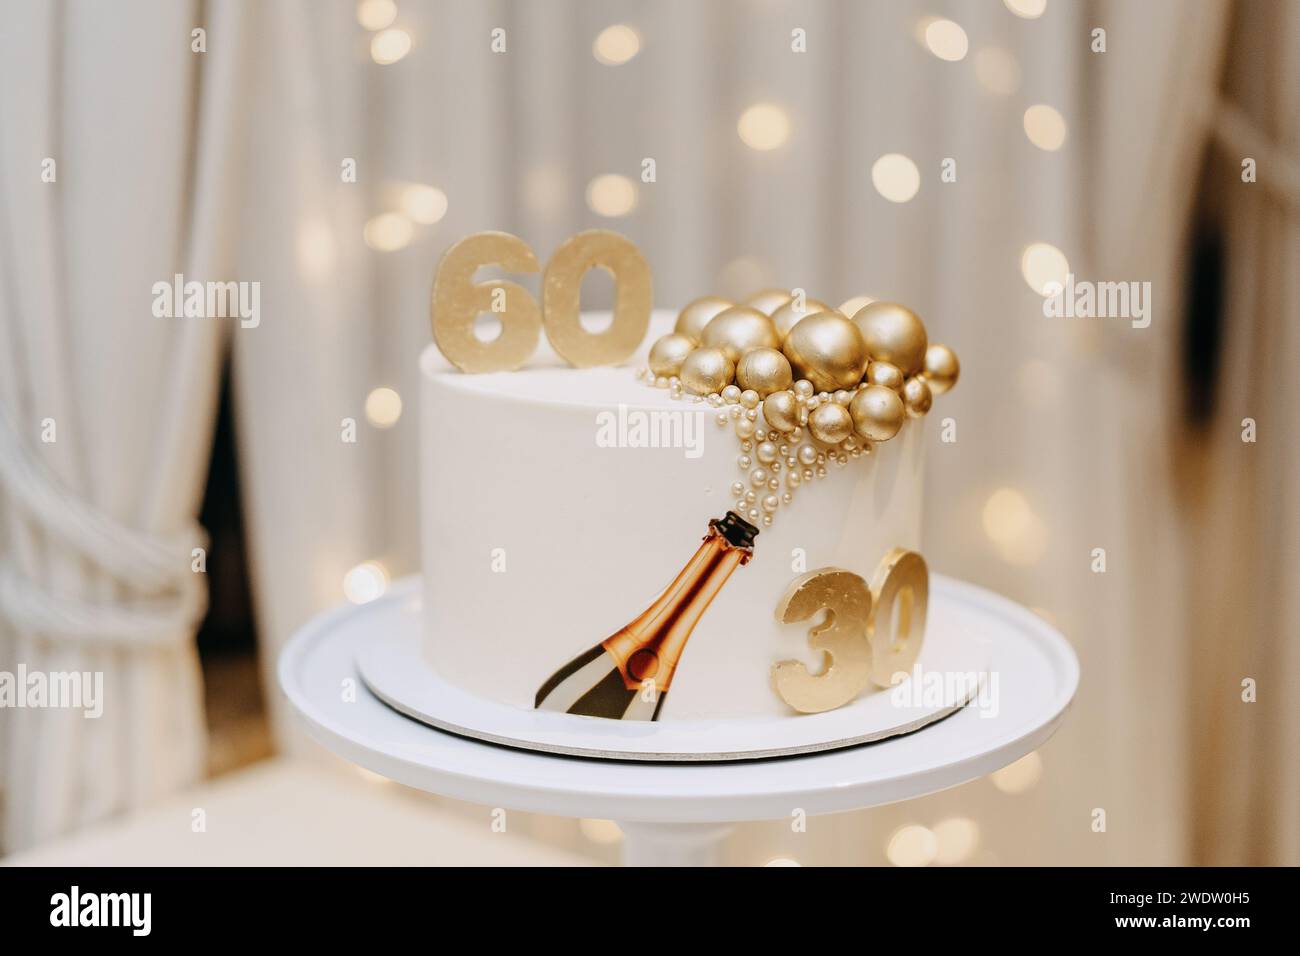 Un délicat gâteau blanc placé sur un support élégant, accompagné d'un éclairage doux et de rideaux gracieux Banque D'Images